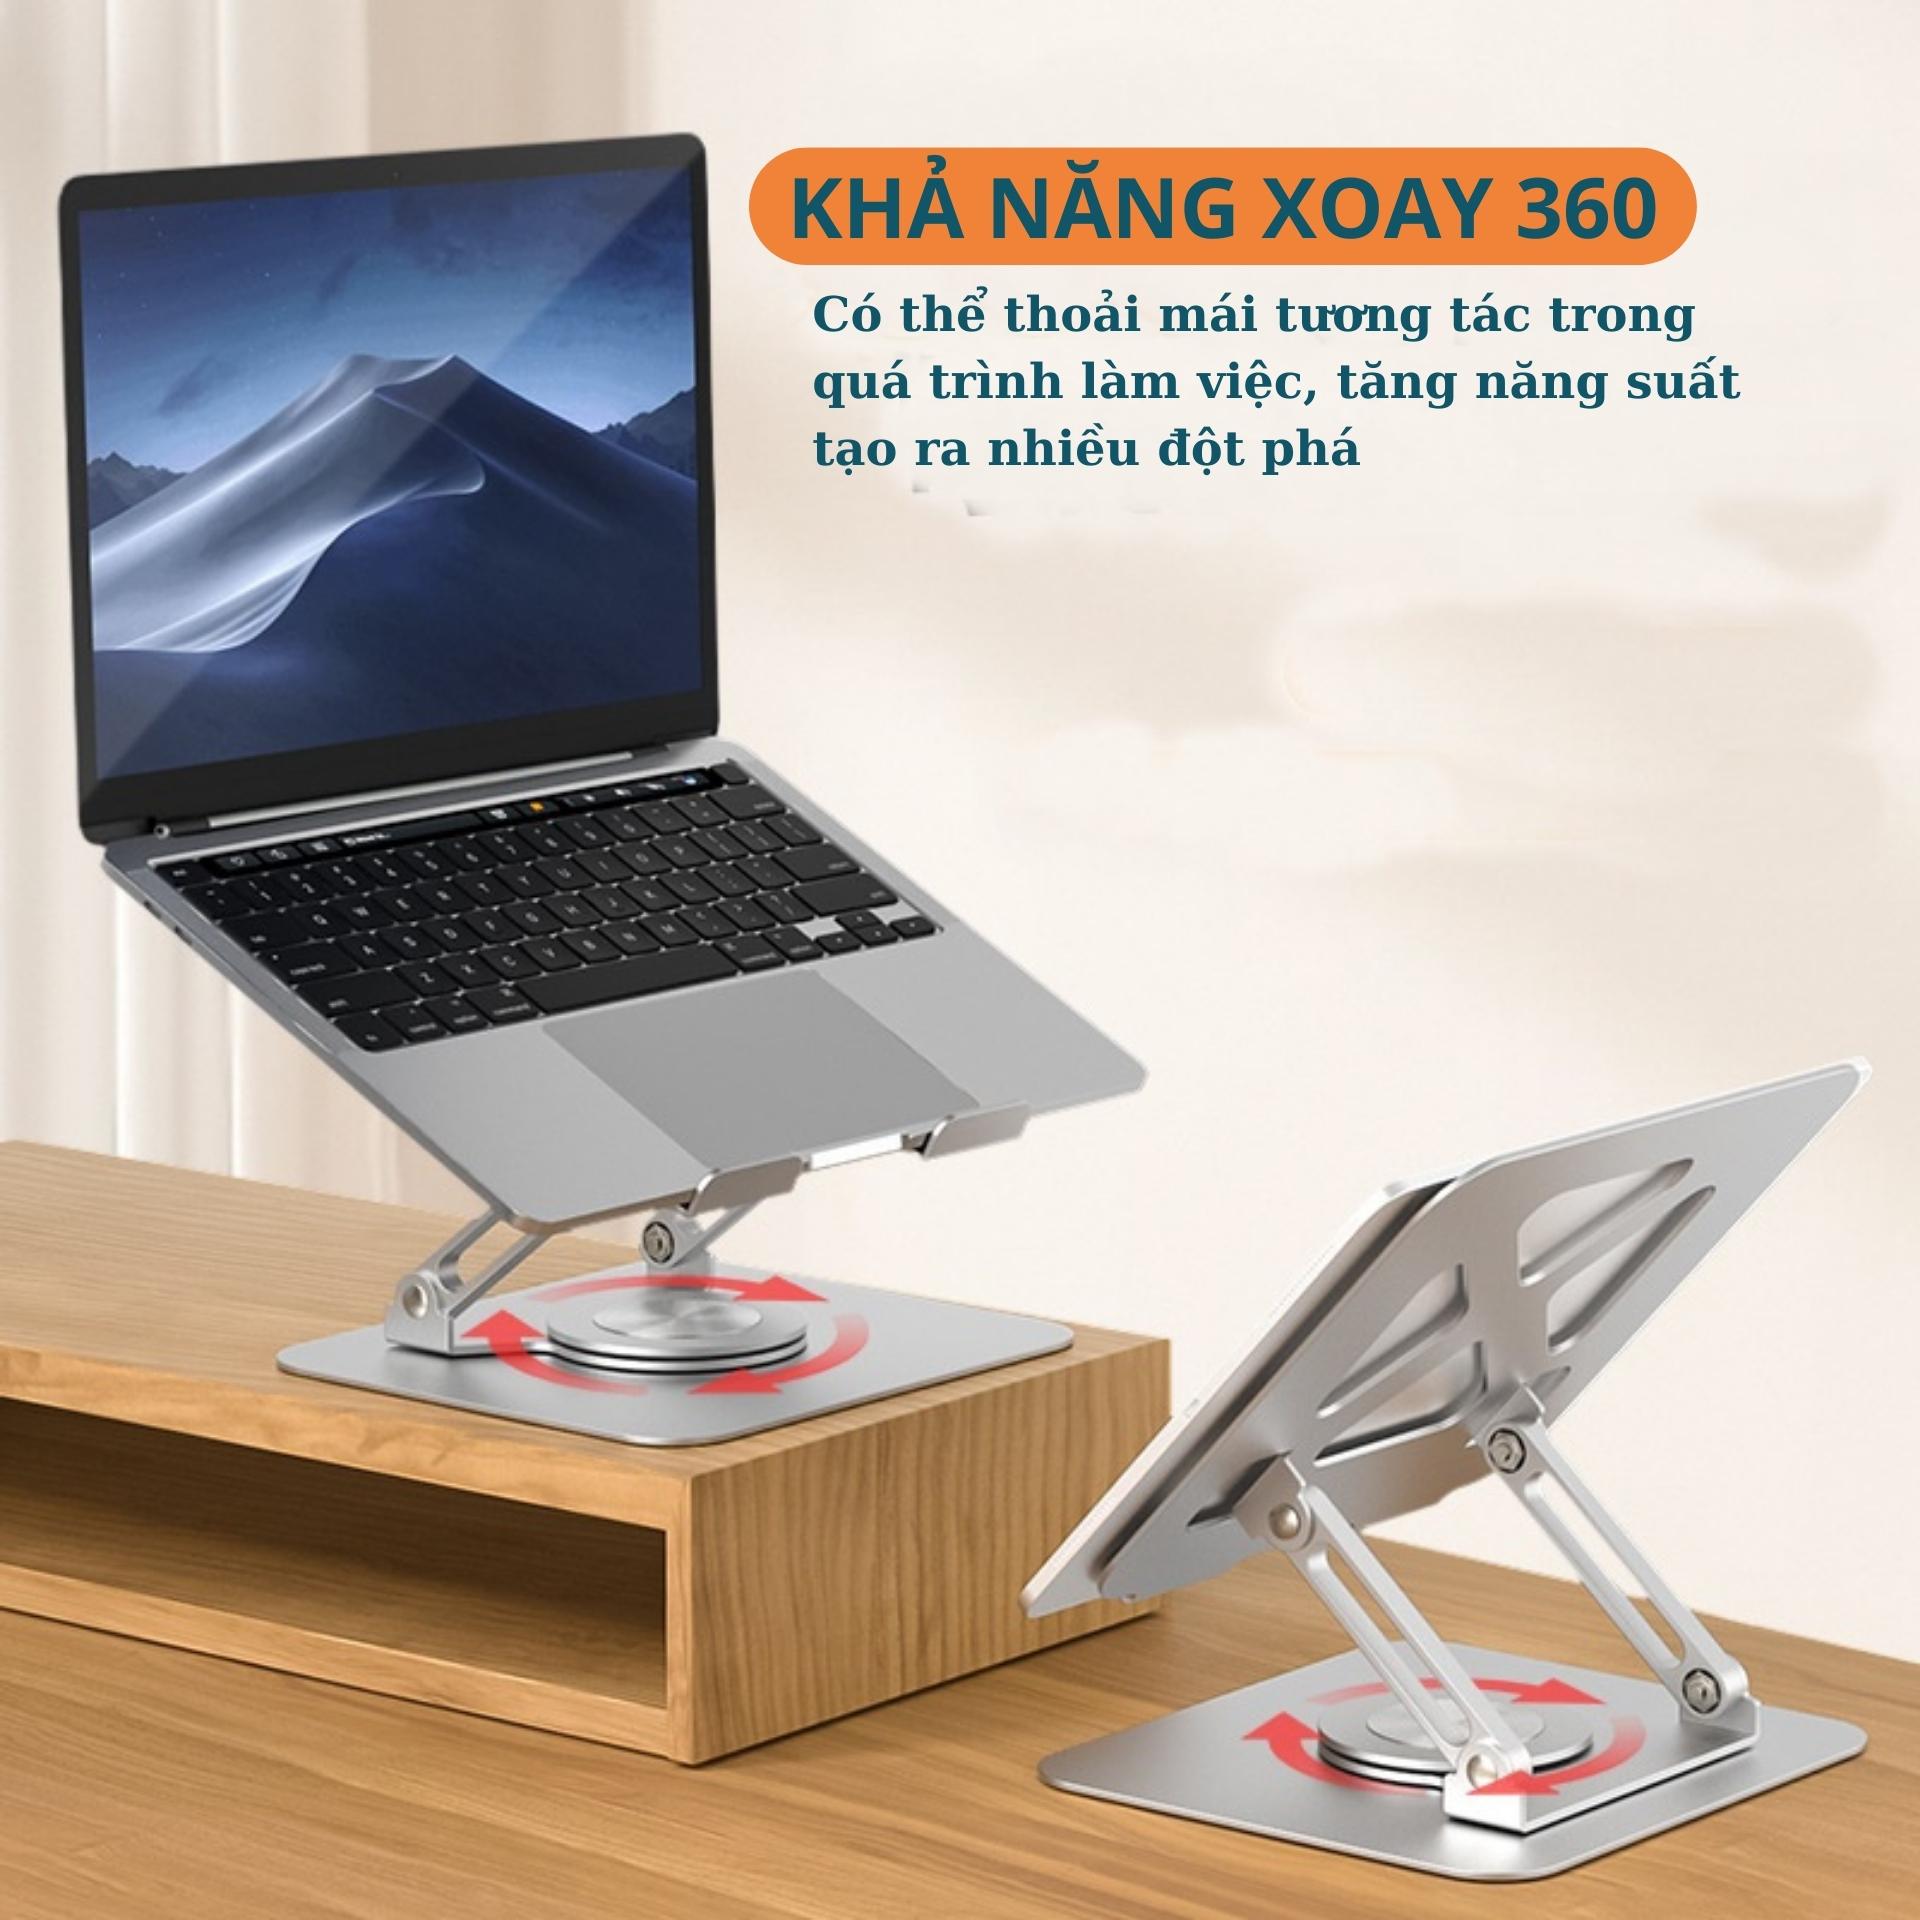 Giá đỡ Laptop Xoay 360 độ - Tuỳ chỉnh độ cao – Dành cho Laptop – Macbook Ipad Hợp kim nhôm cao cấp_ Hàng chính hãng